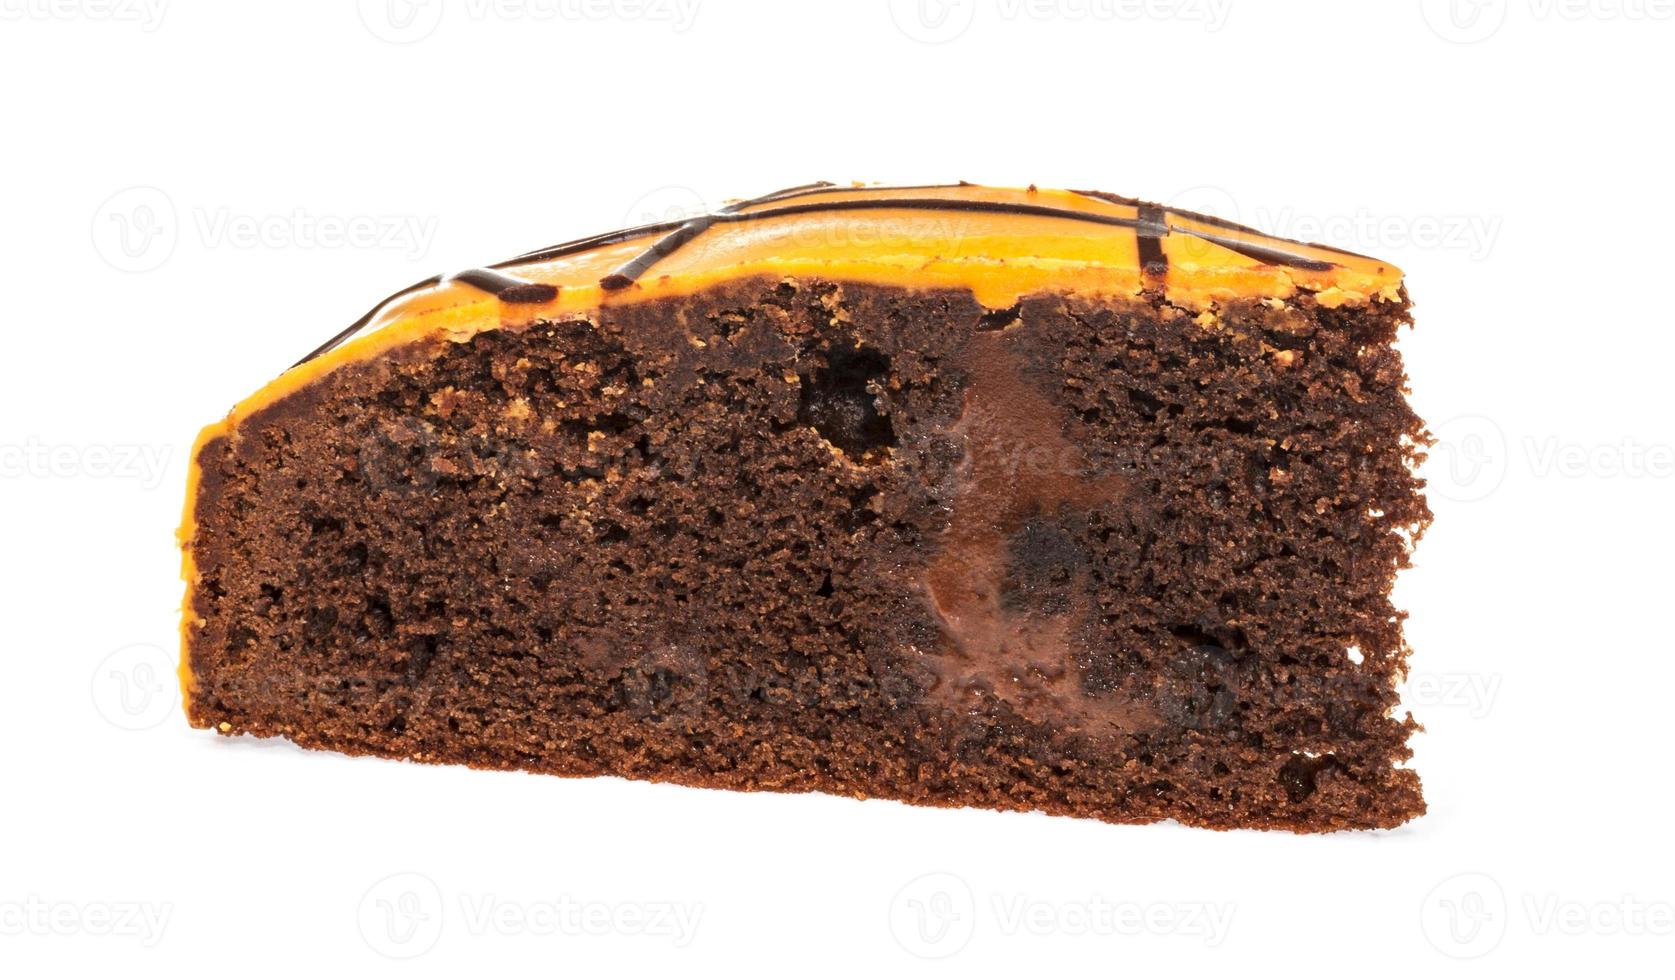 pedaço de bolo de chocolate com glacê no fundo branco isolado foto